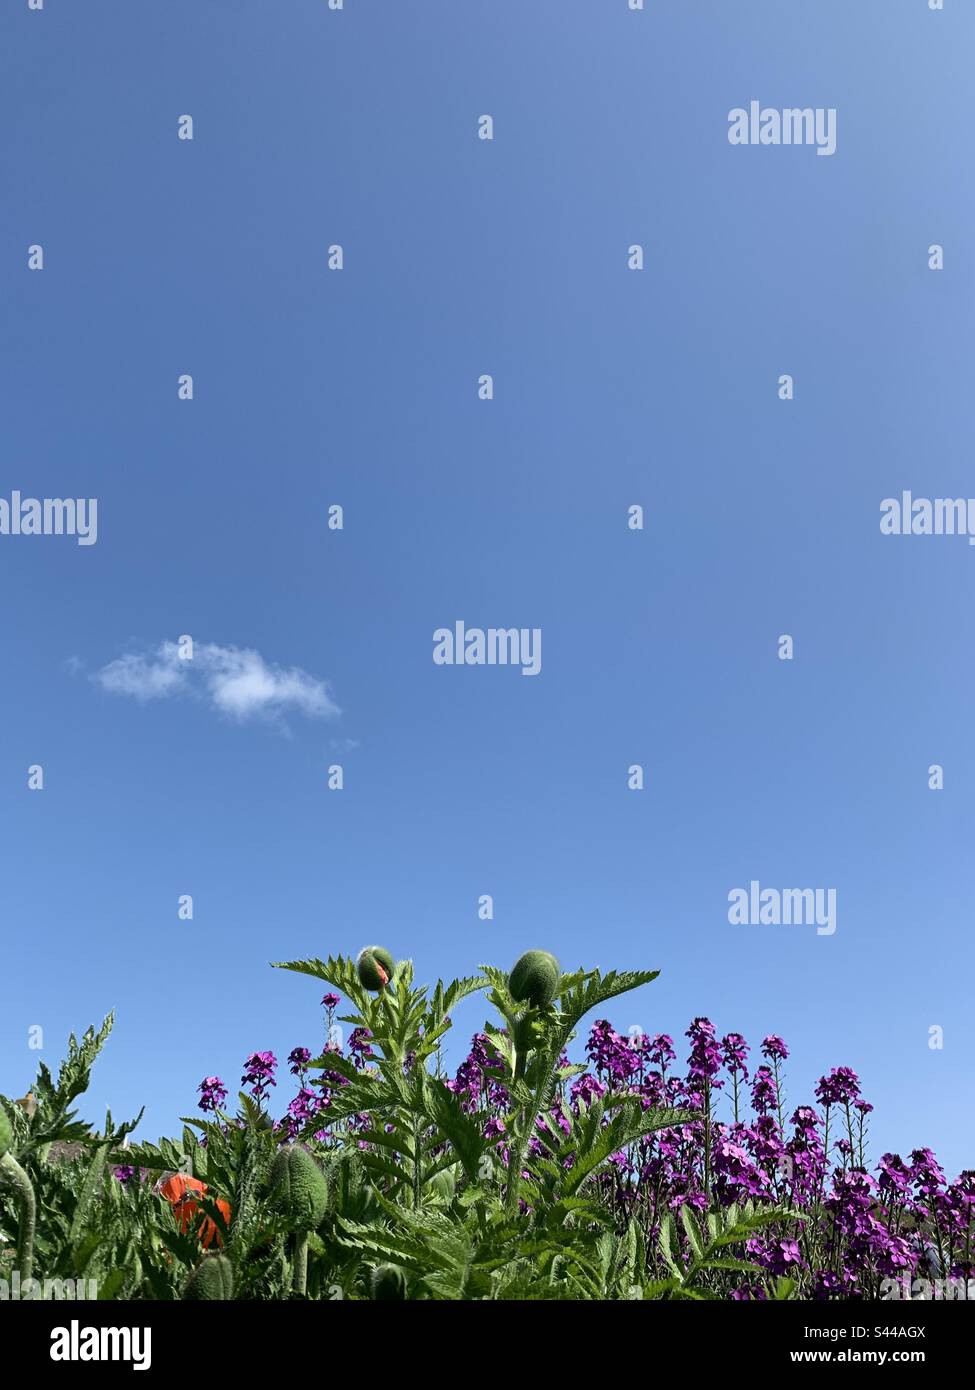 Letto di fiori con gemme di papavero giganti e pianta di Erysimum. Cielo blu con una piccola nuvola bianca. Foto Stock